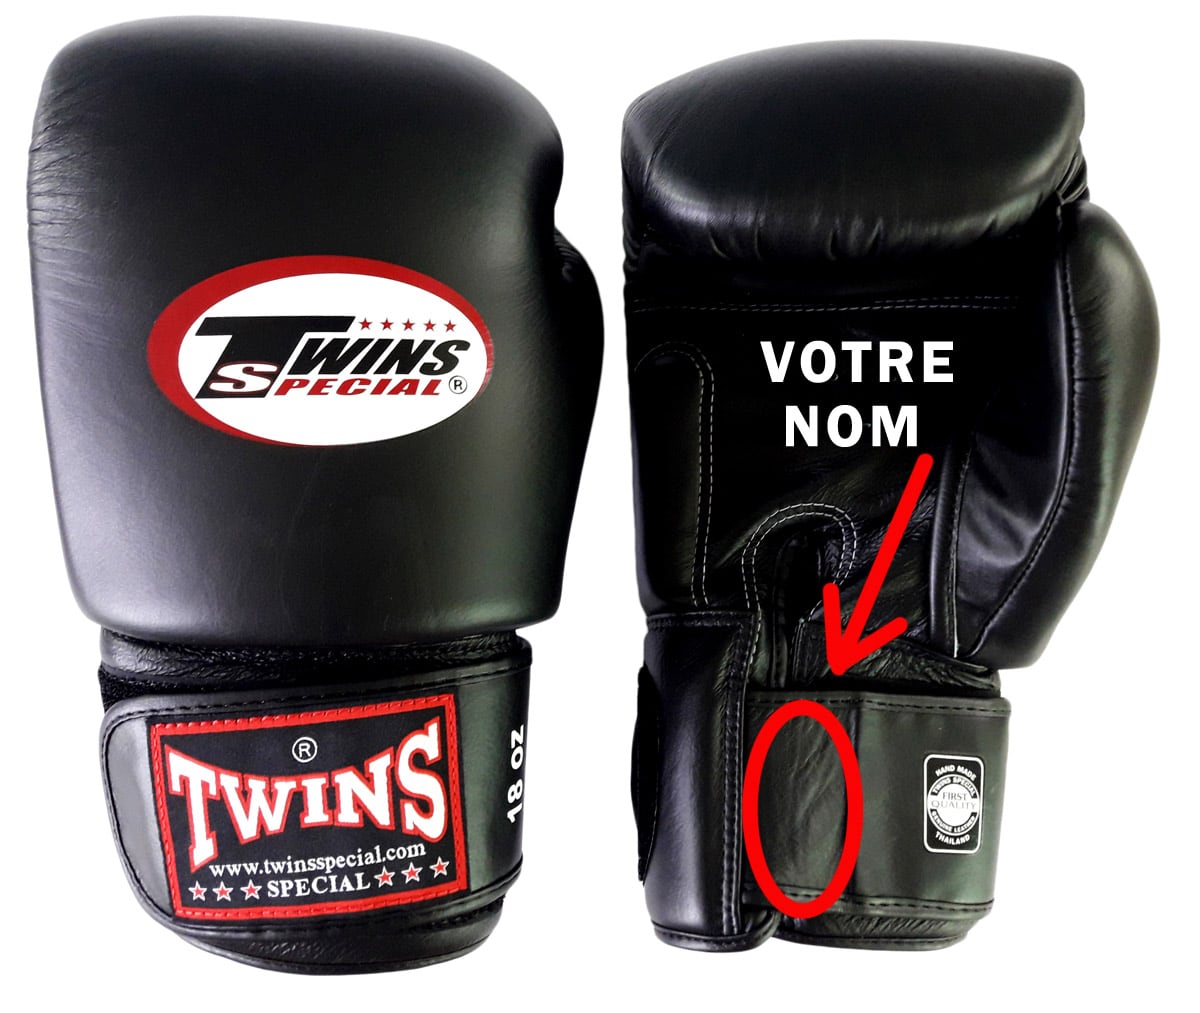 Personnalisation gants de boxe - Thailand fight gear